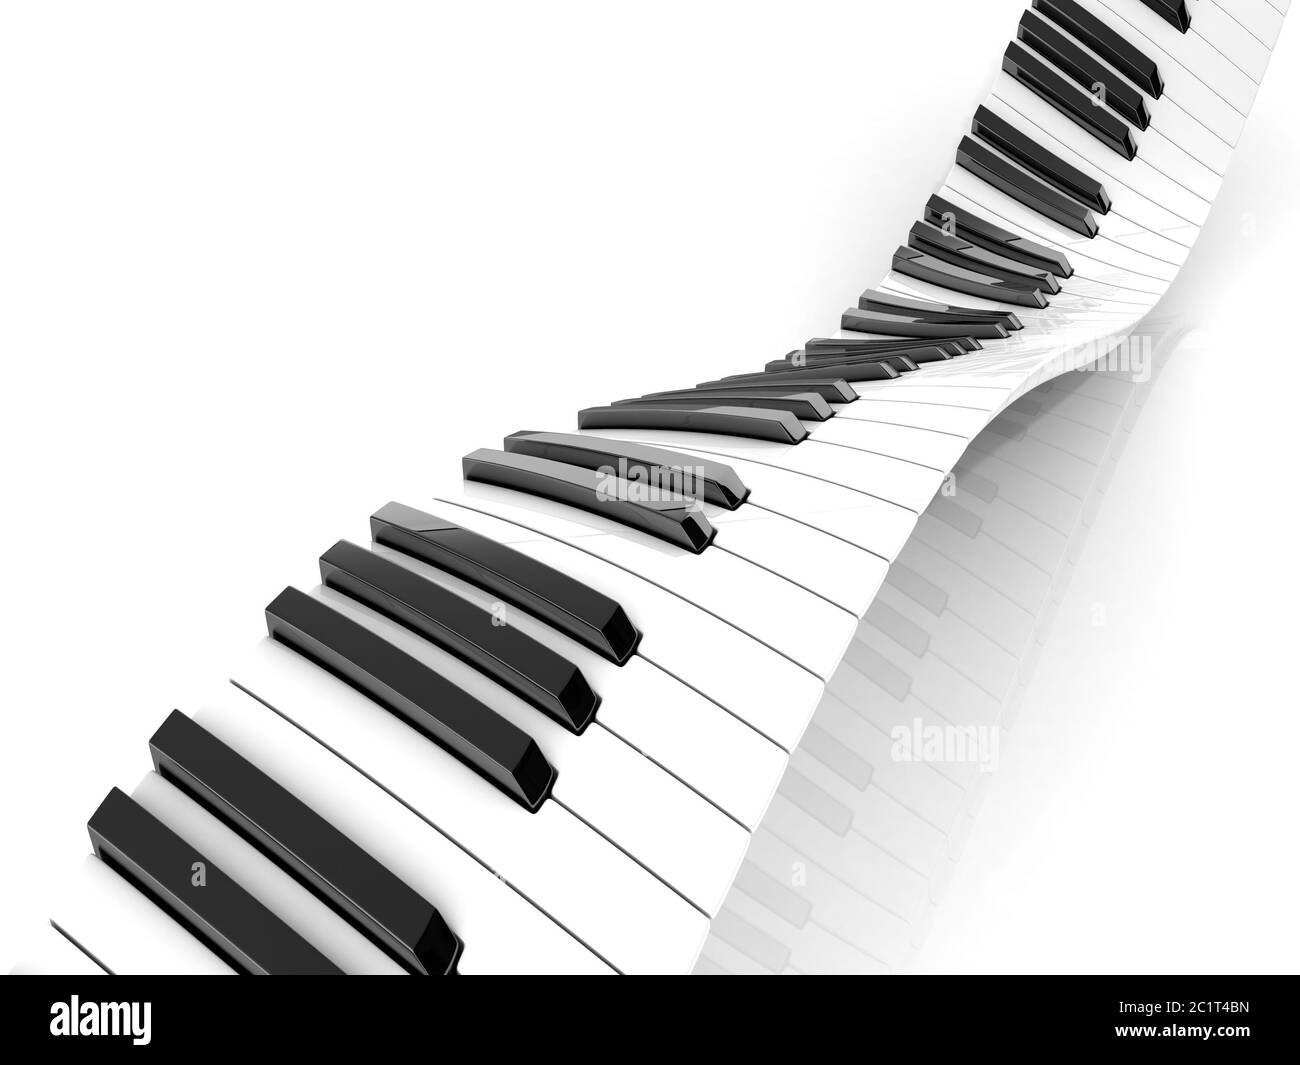 Wavy abstract piano keyboard Stock Photo